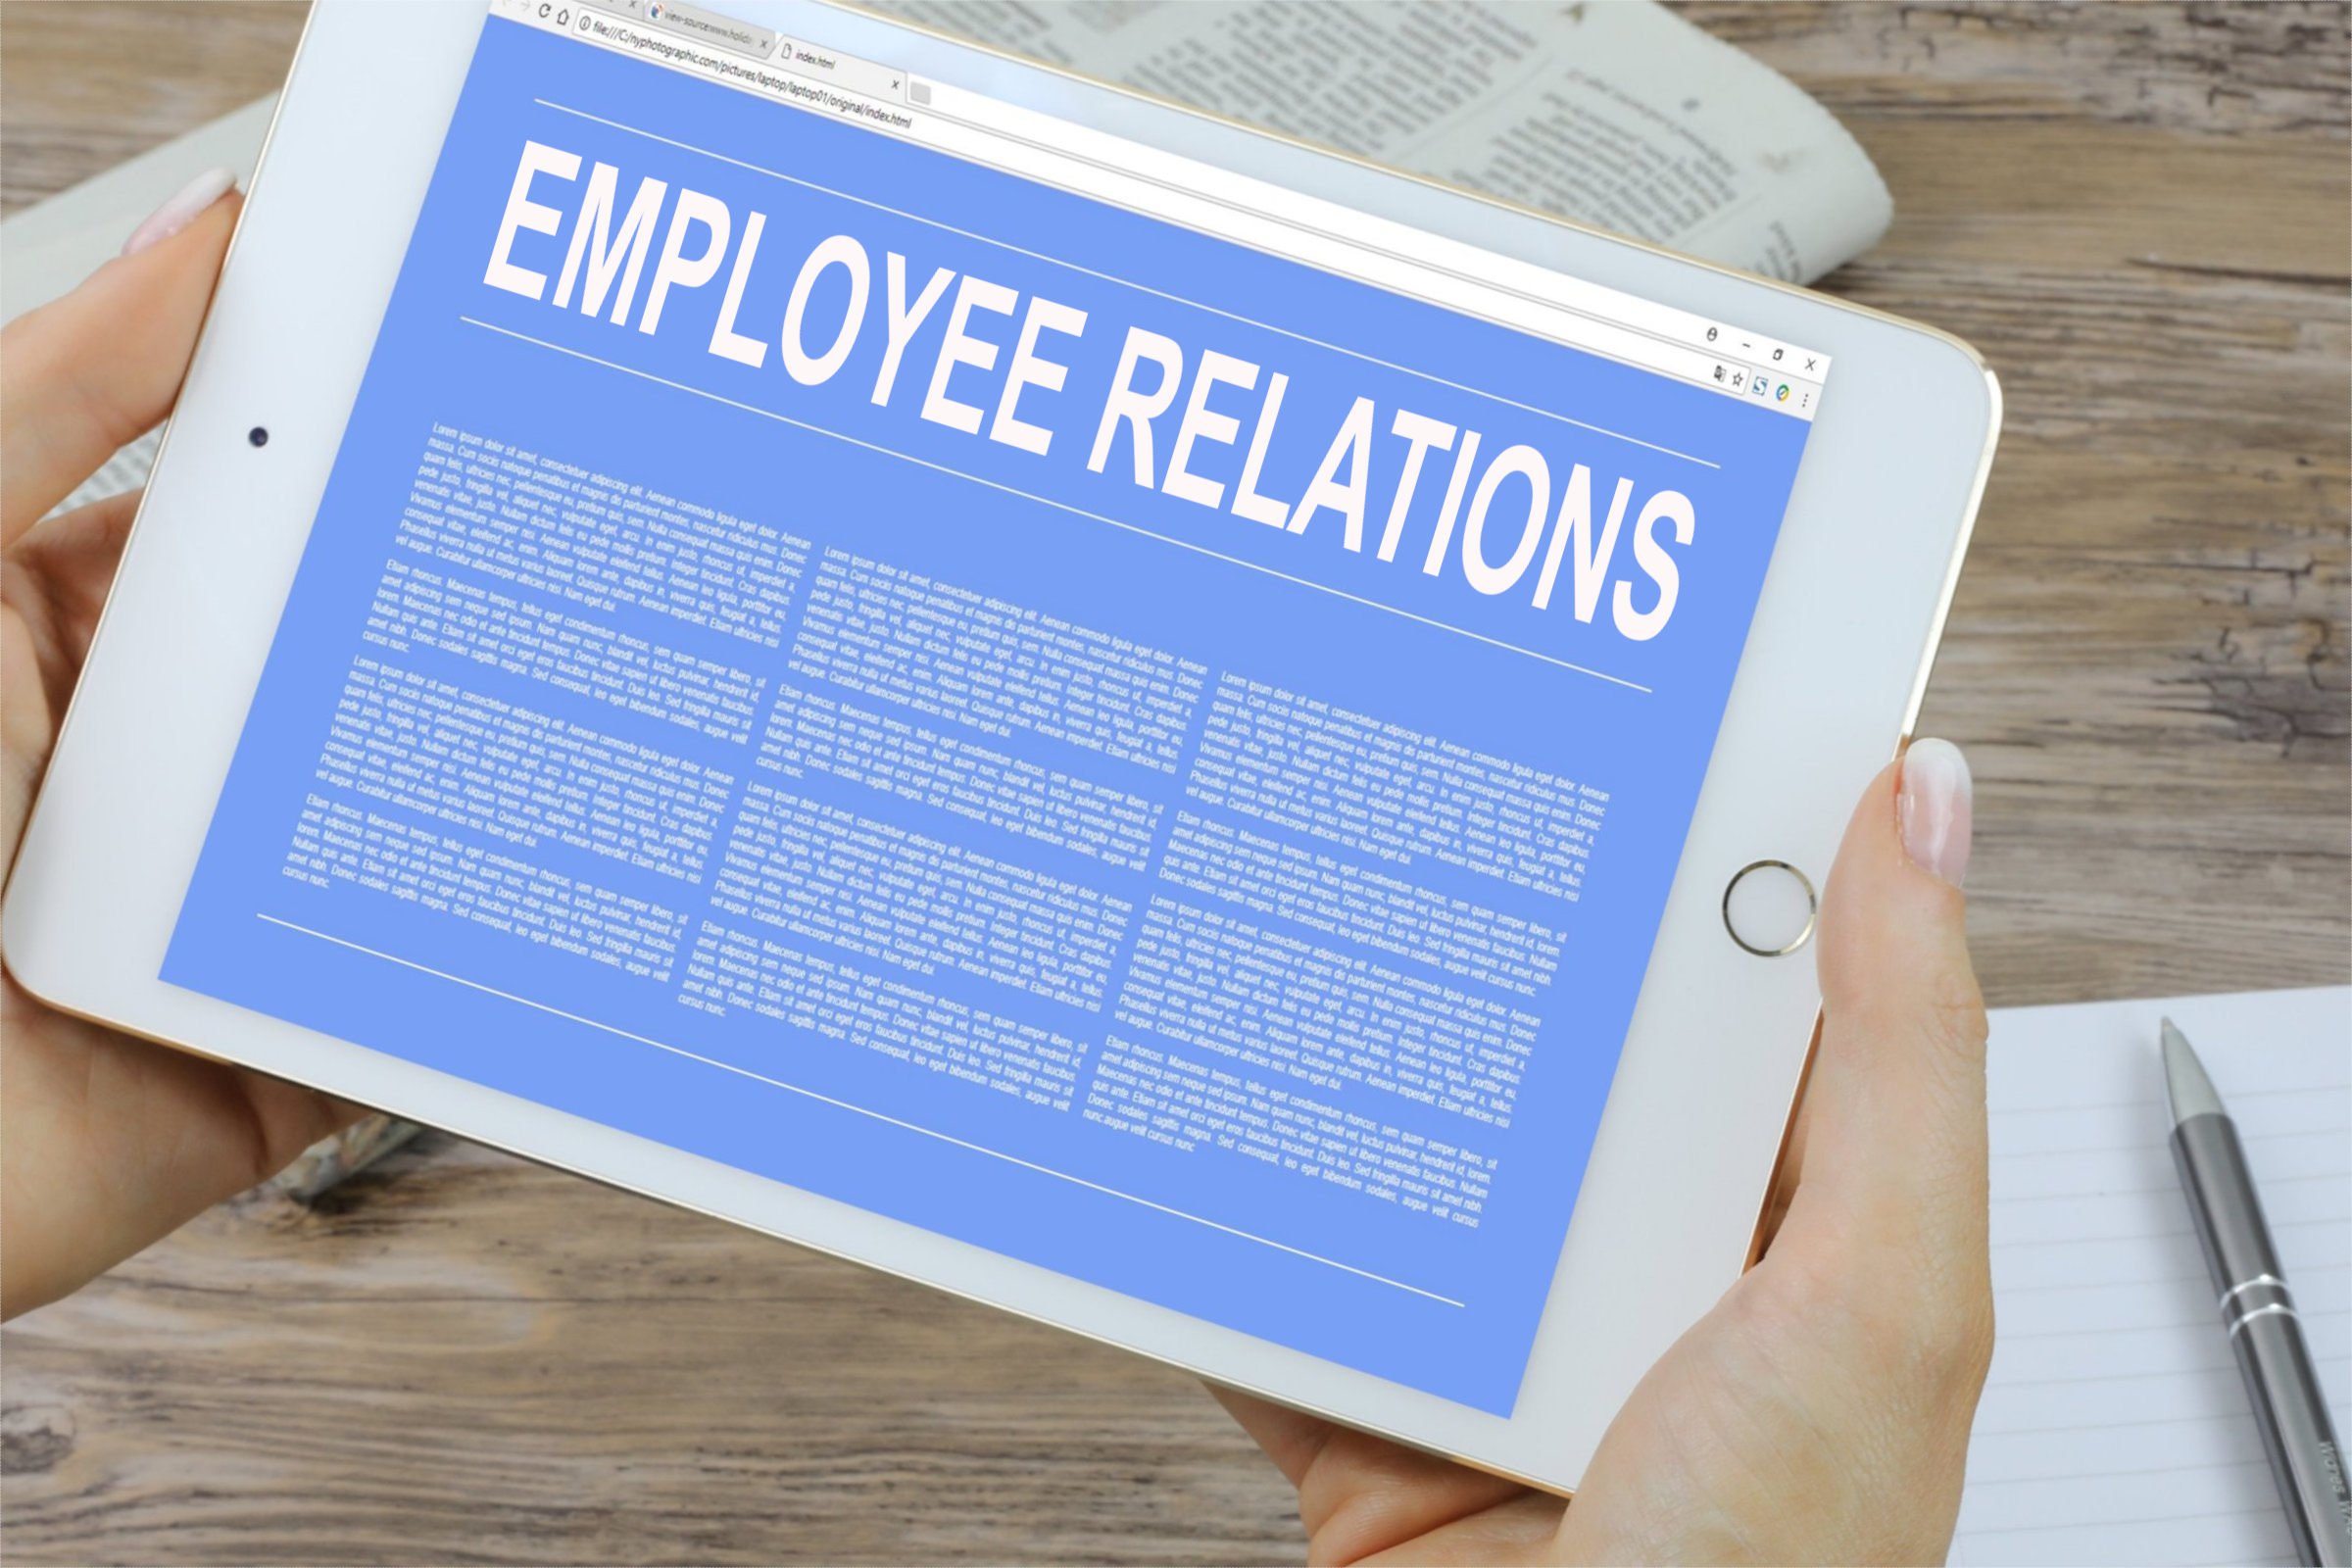 employee relations